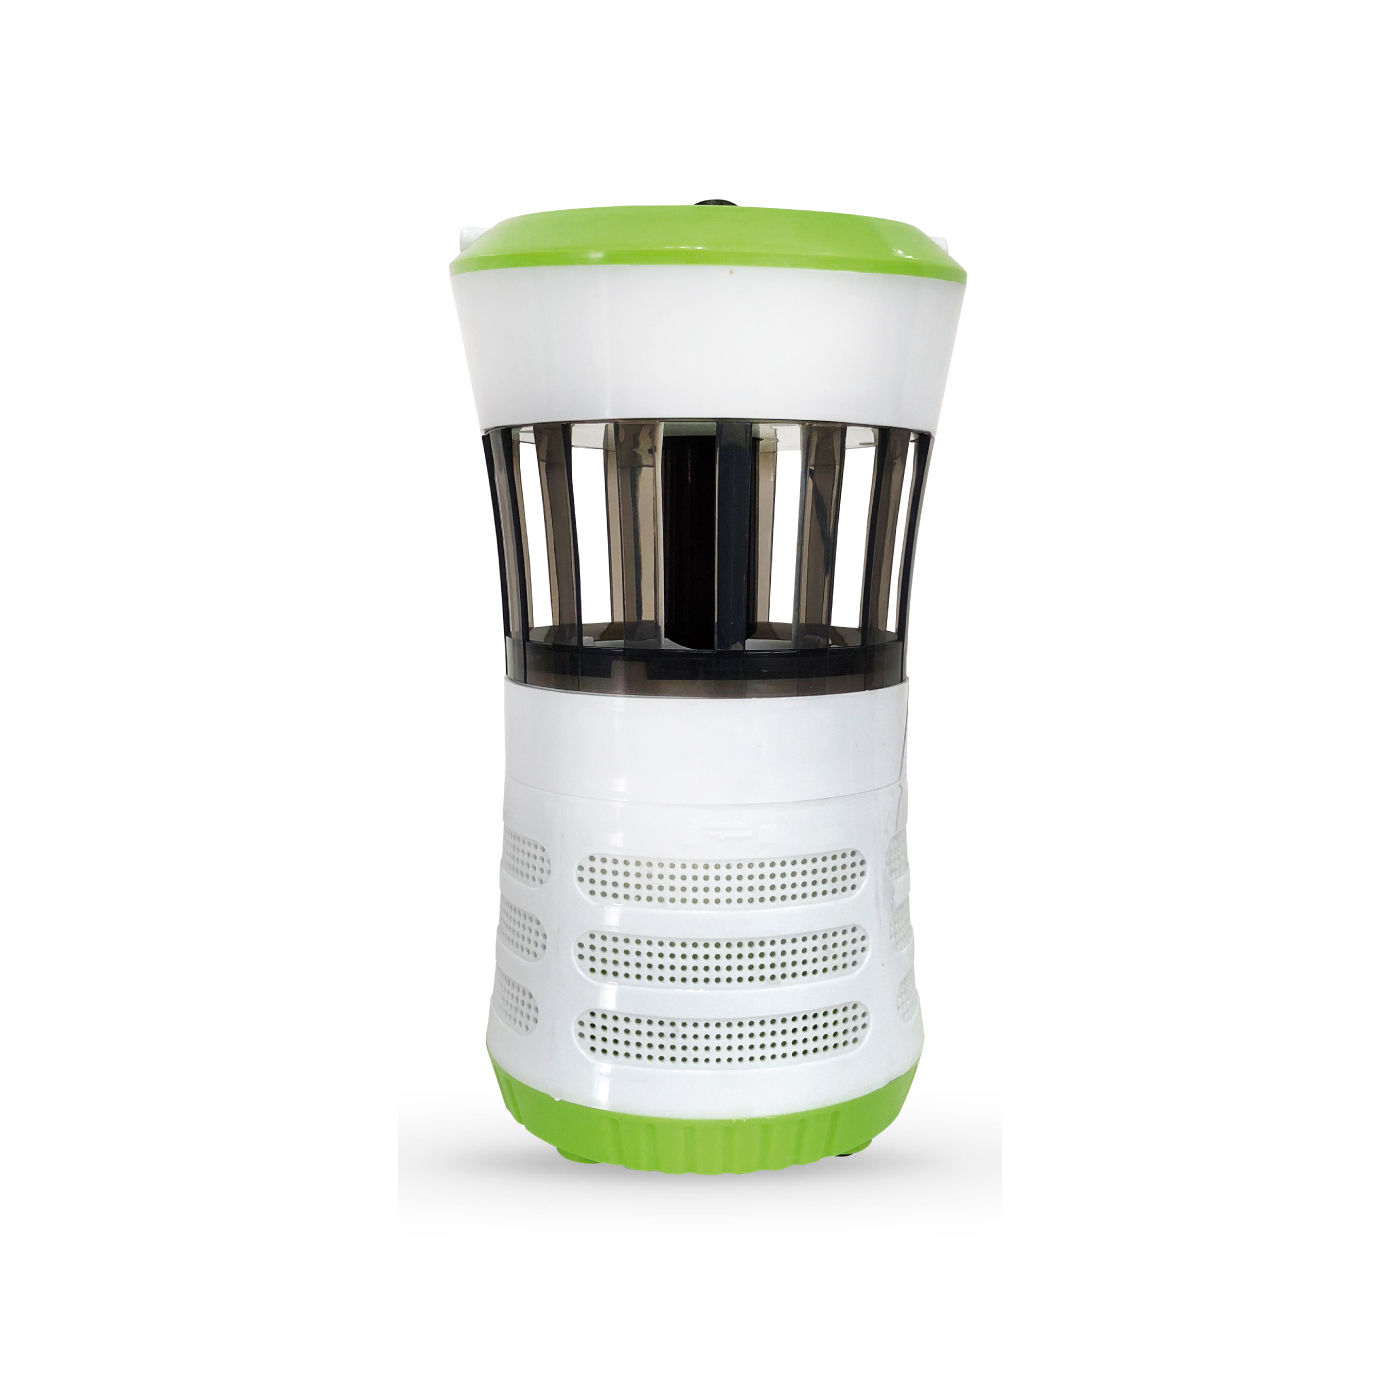 Ergolux Антимоскитный светильник MK-002 ( 3Вт, LED)